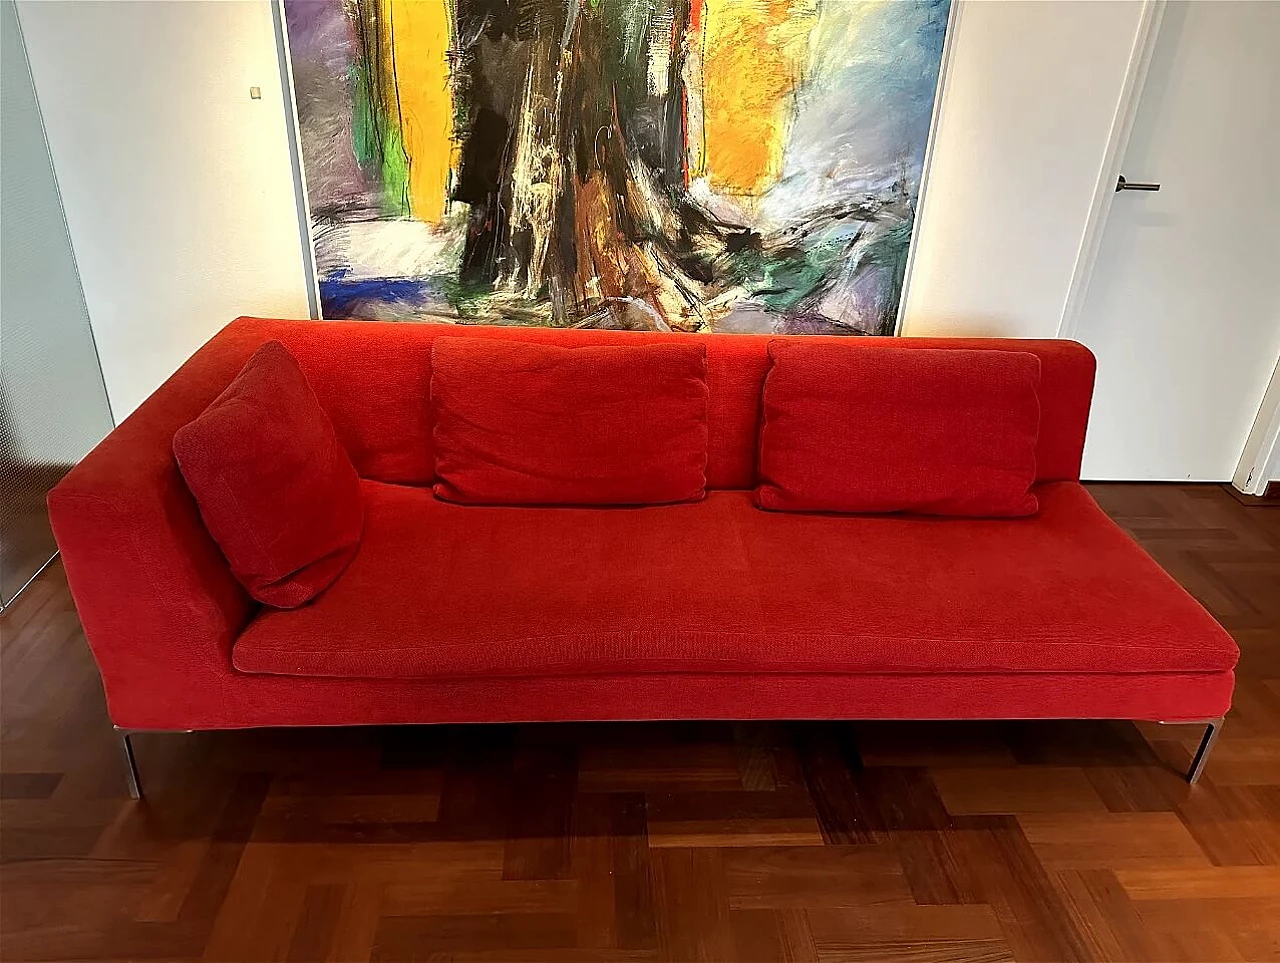 Charles sofa by Antonio Citterio for B&B Italia 2